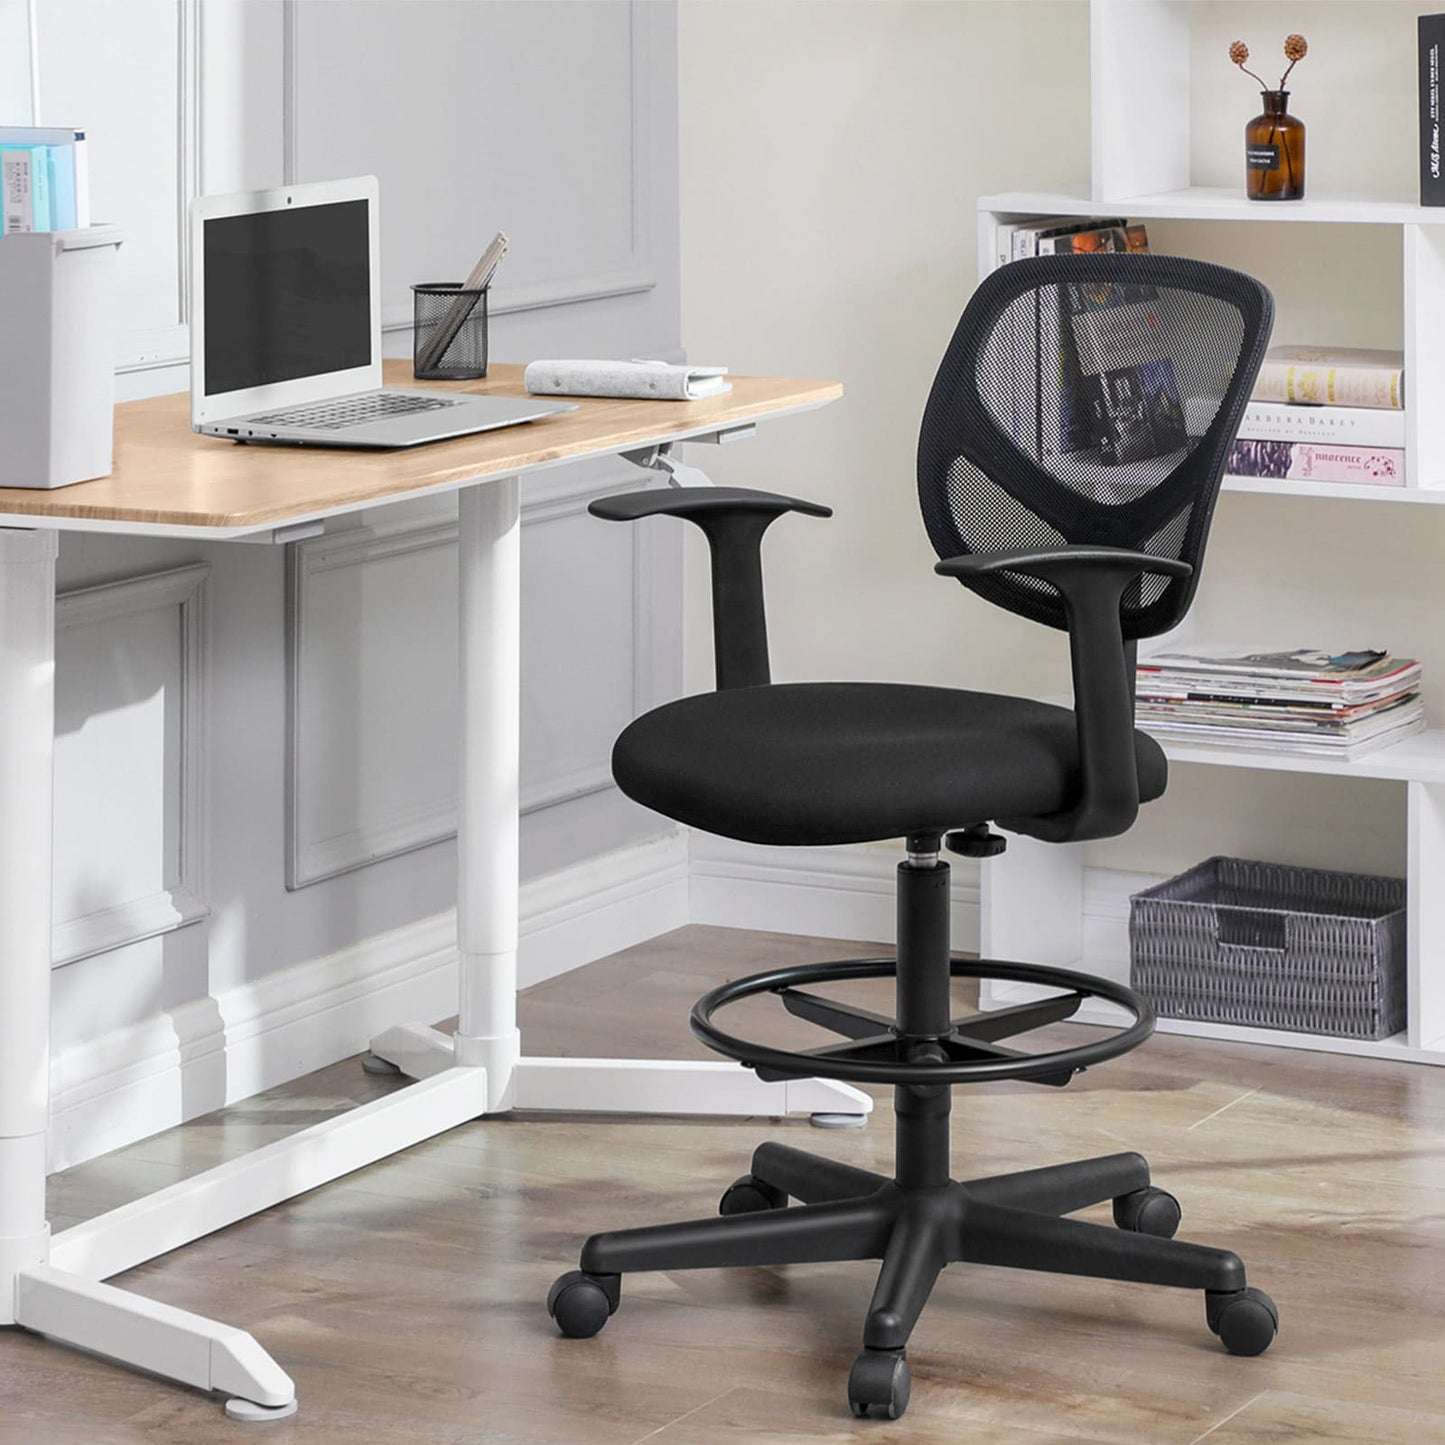 Bürostuhl, Ergonomischer Arbeitshocker mit Armlehnen, Sitzhöhe 55-75 cm, Hoher Arbeitsstuhl mit verstellbare Fußring, Belastbarkeit 120 kg